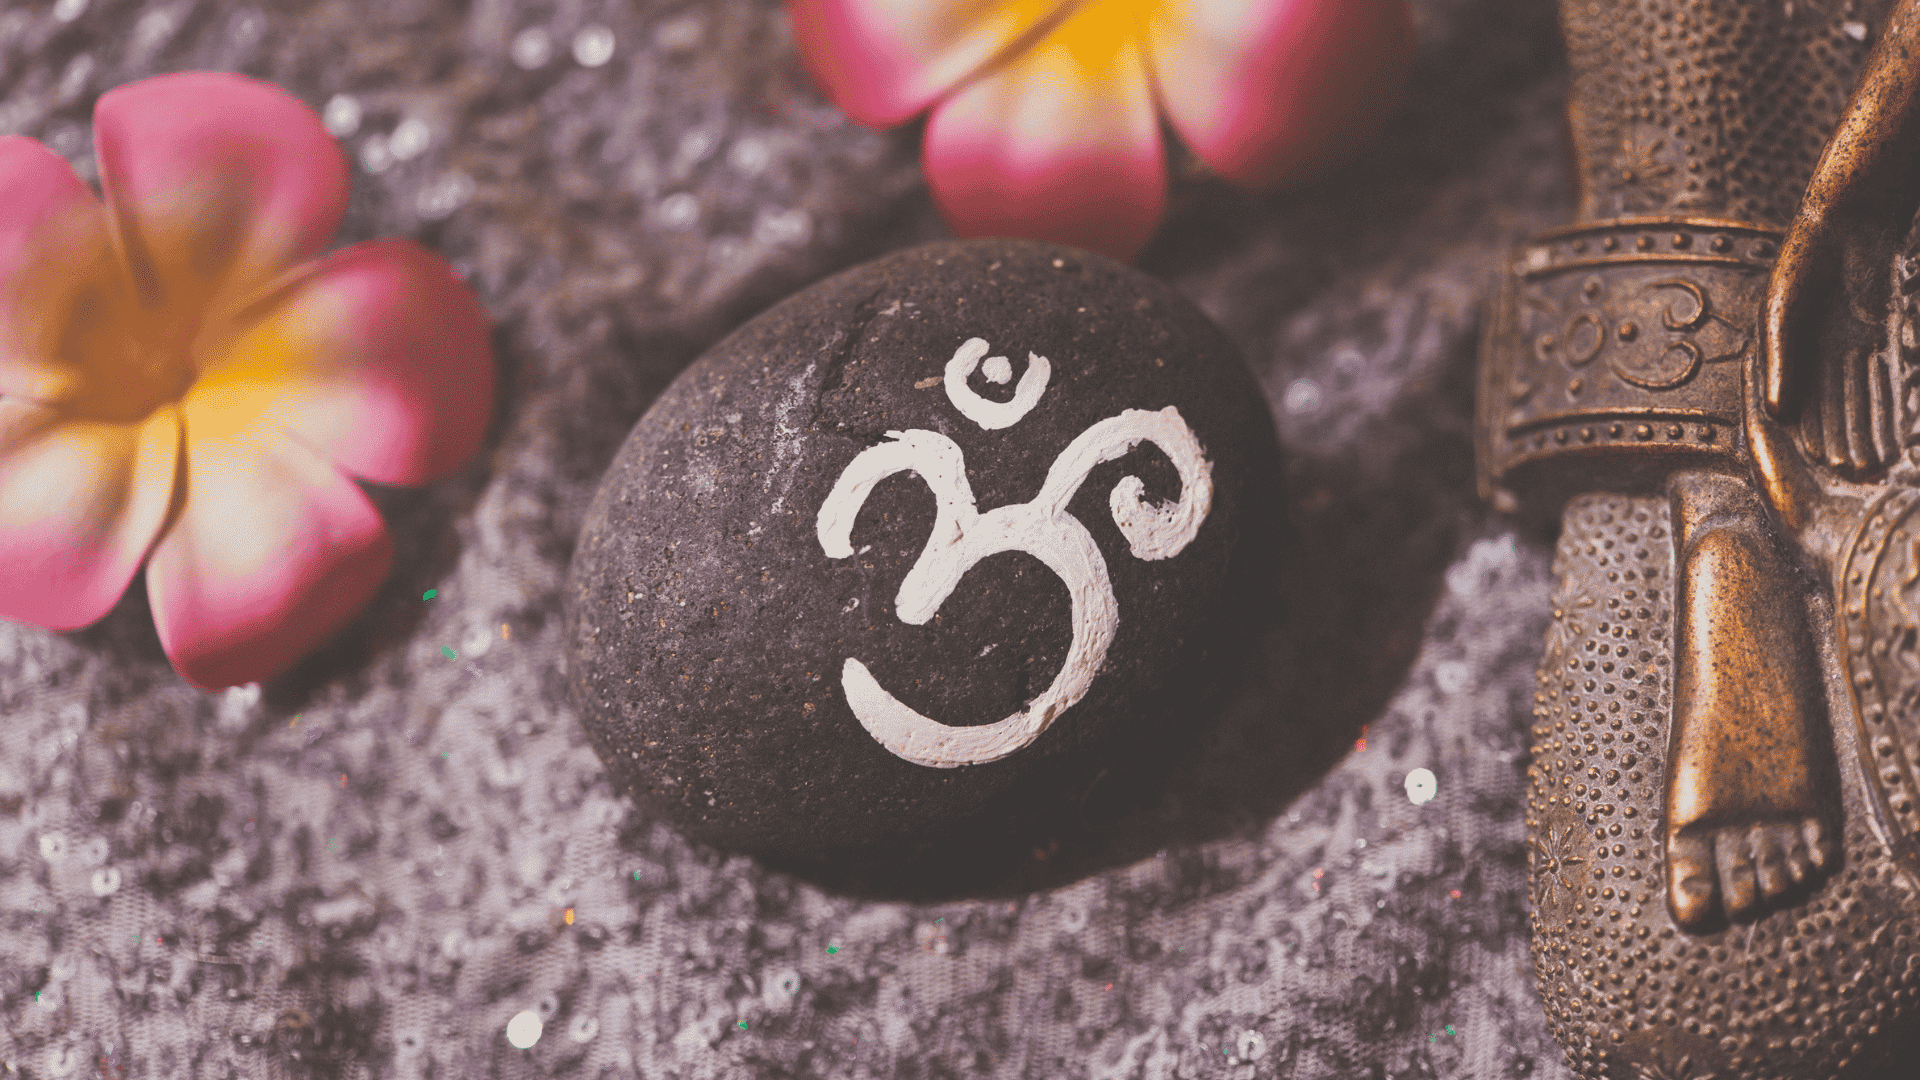  9 símbolos espirituales que debes conocer, significado y cómo utilizar cada uno de ellos